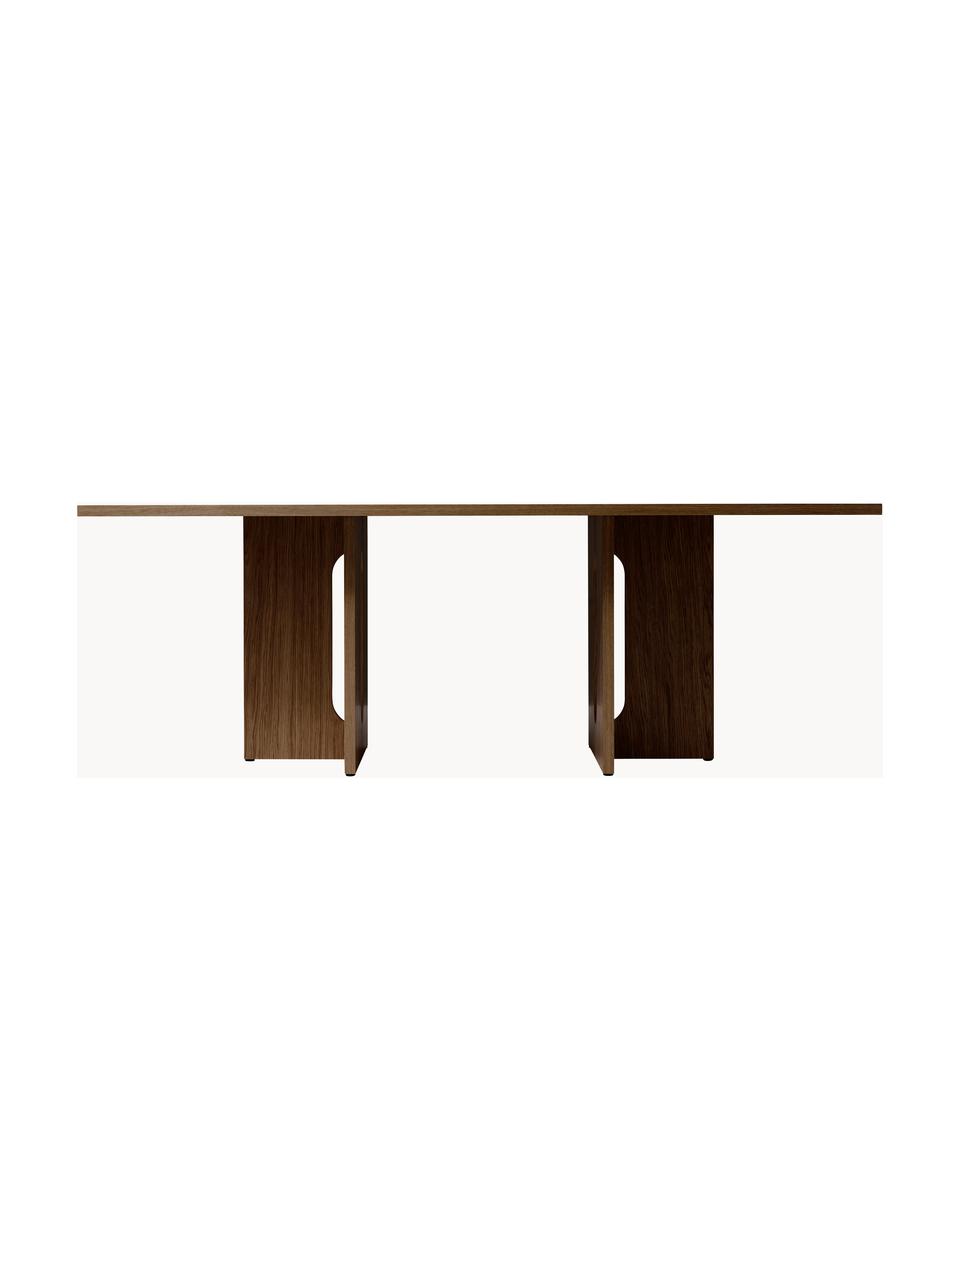 Tmavo morený jedálenský stôl Androgyne, rôzne veľkosti, Drevovláknitá doska strednej hustoty (MDF) s dyhou z dubového dreva, Drevo, morený do tmava, Š 280 x H 110 cm